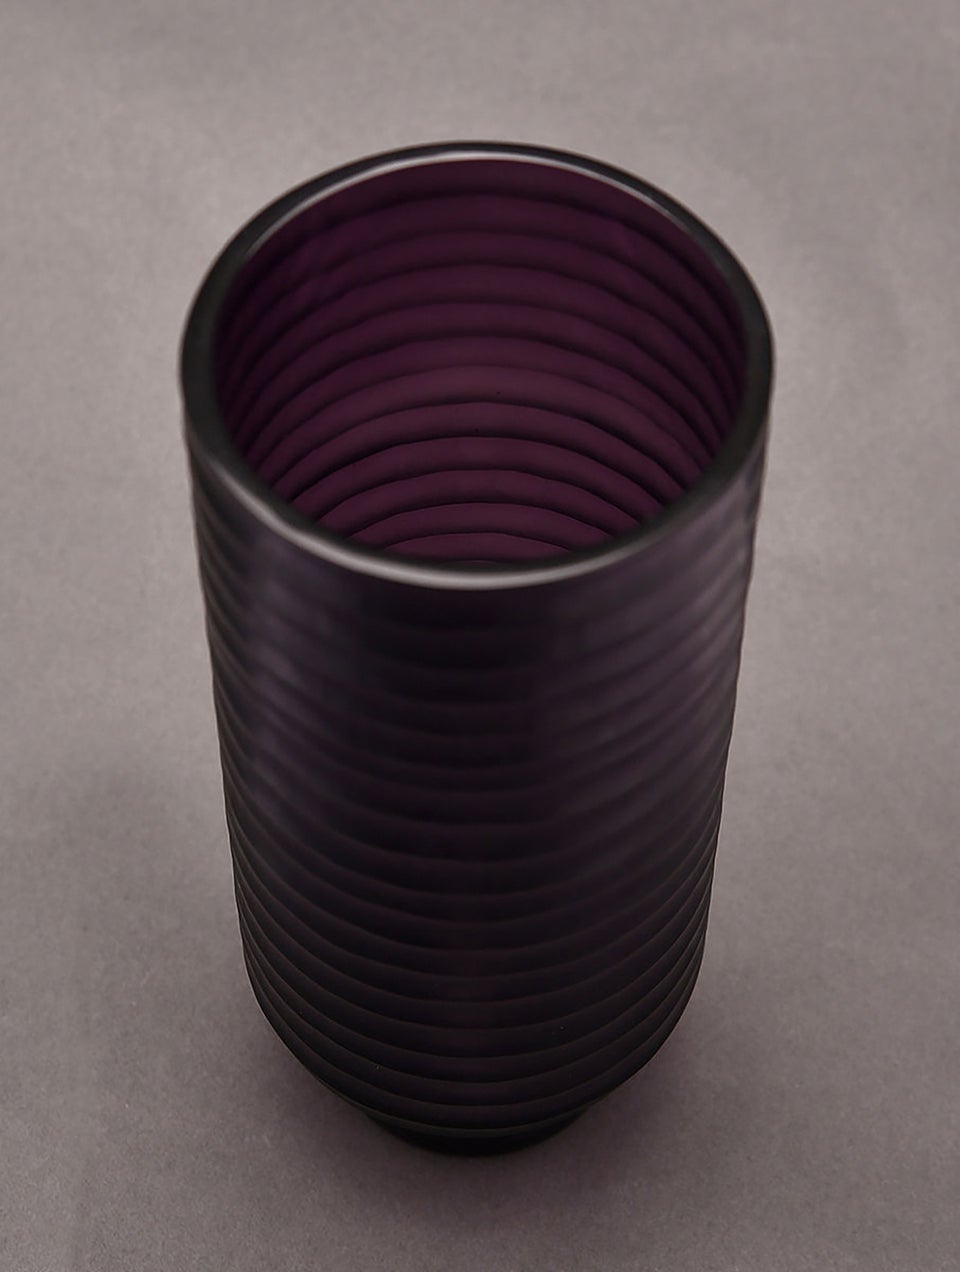 Violet Handblown Glass Vase